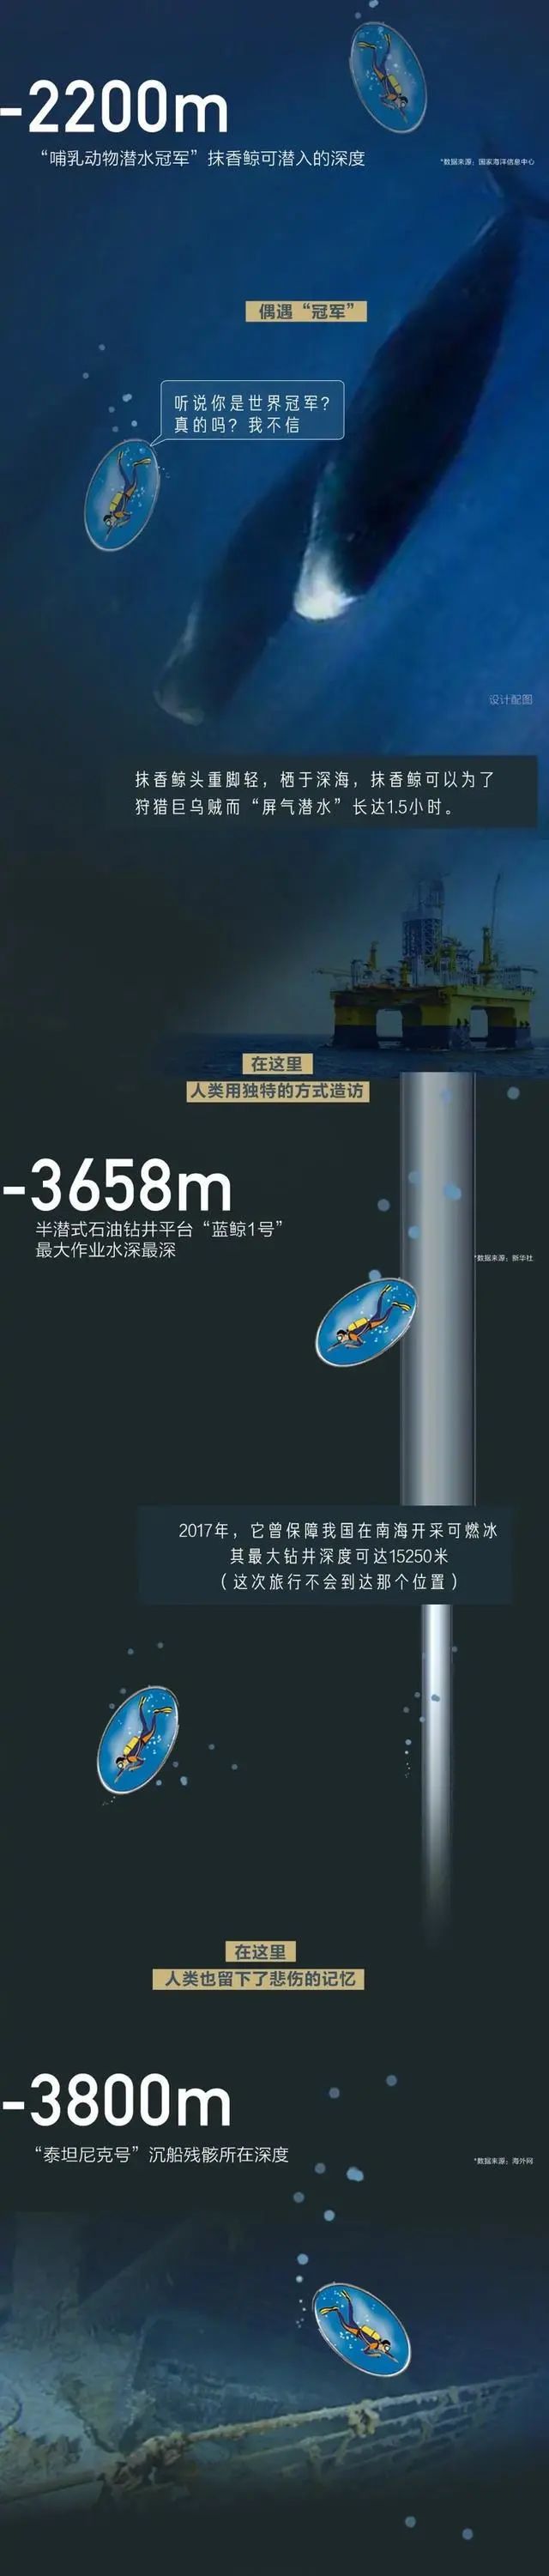 海洋科普漫画 I 从0米到10000米，海底深处有什么？：科普中国